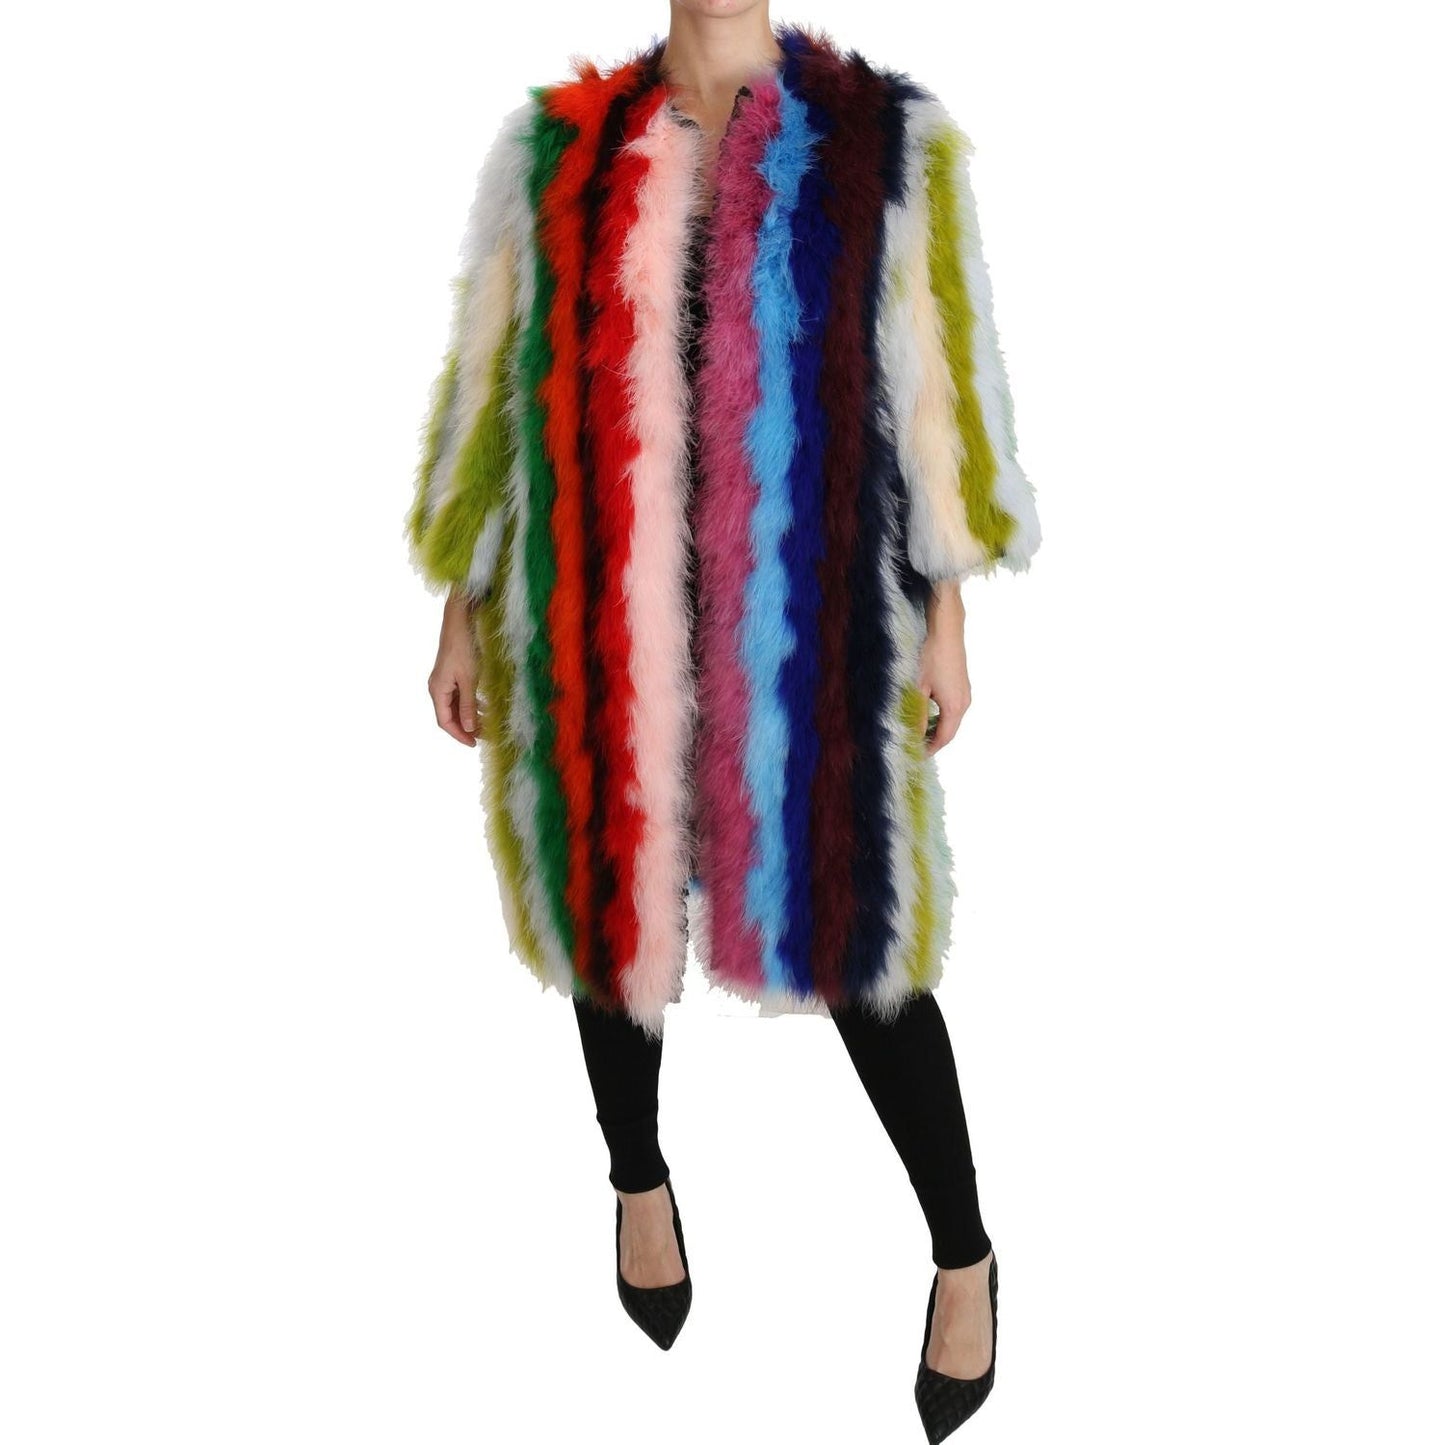  Dolce & Gabbana Multicolor Turkey Feather Cape Fur Coat McRichard Designer Brands